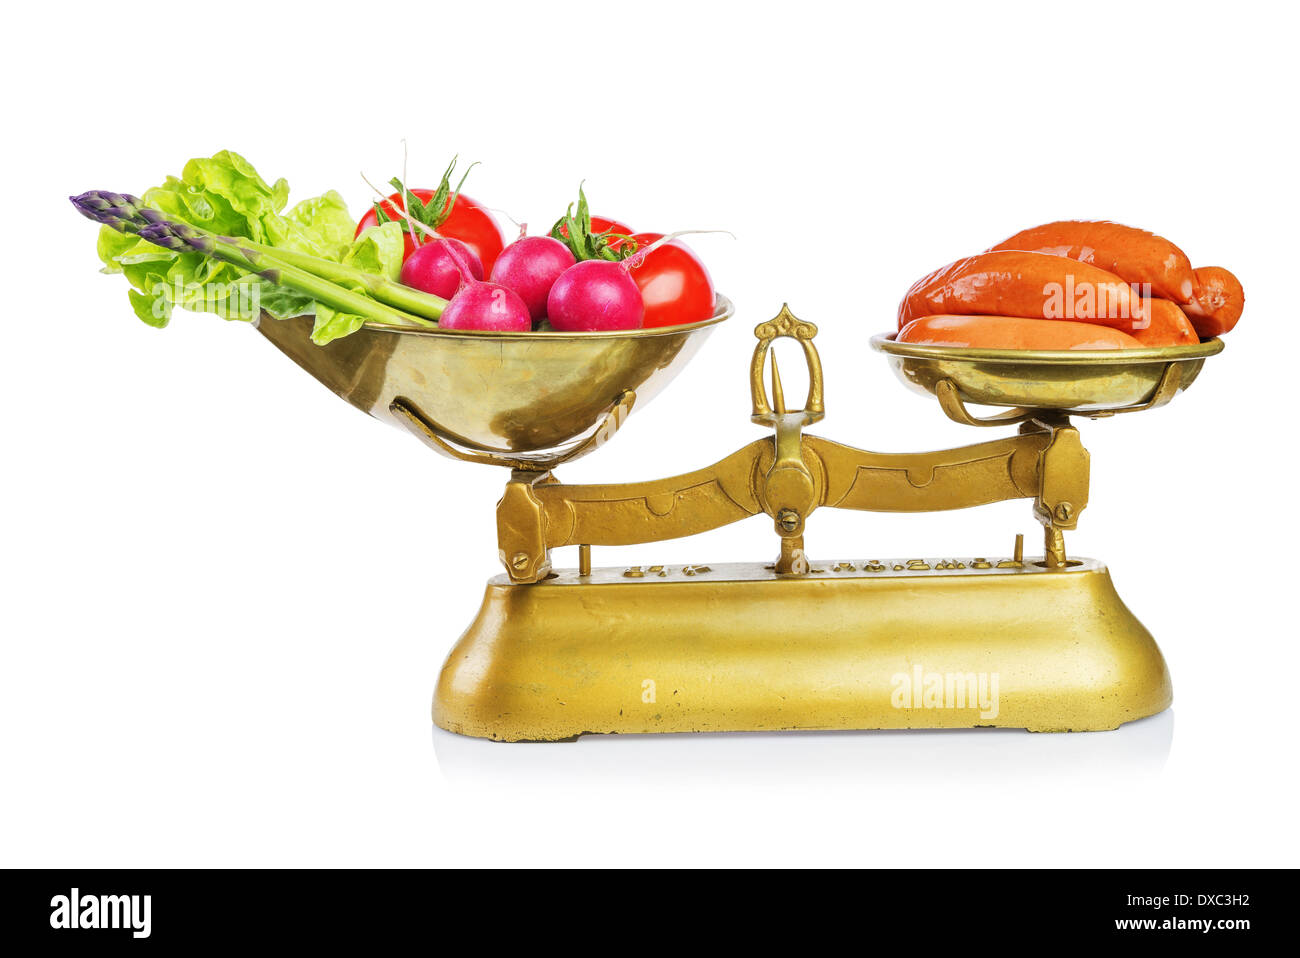 Des aliments sains et des aliments malsains sur les balances.Dieting concept.isolés. Banque D'Images